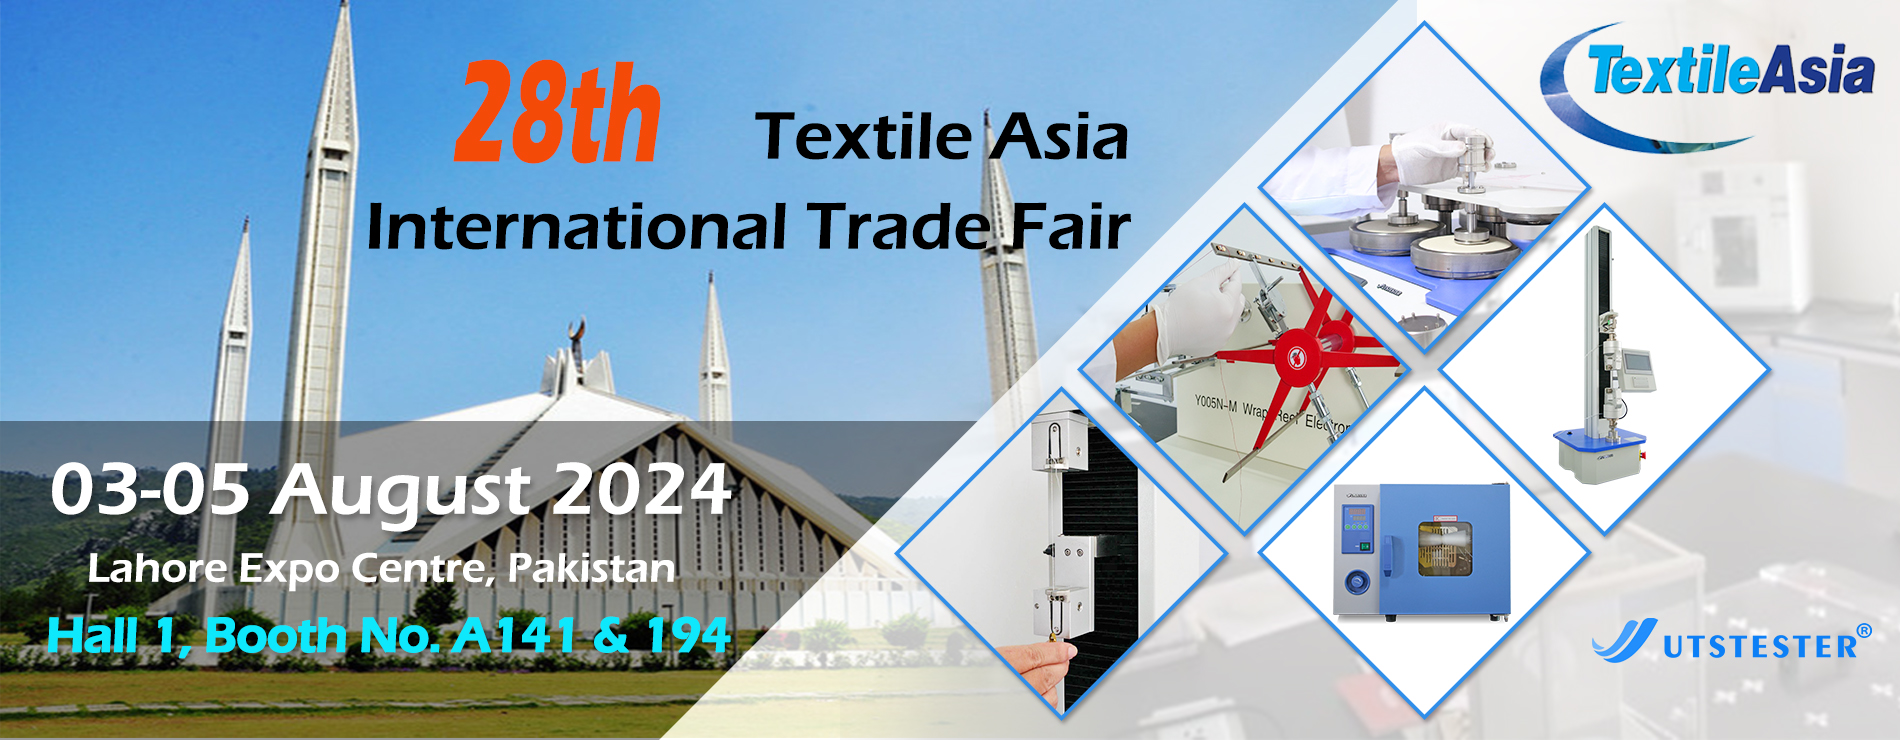 28th Textile Asia International Trade Fair